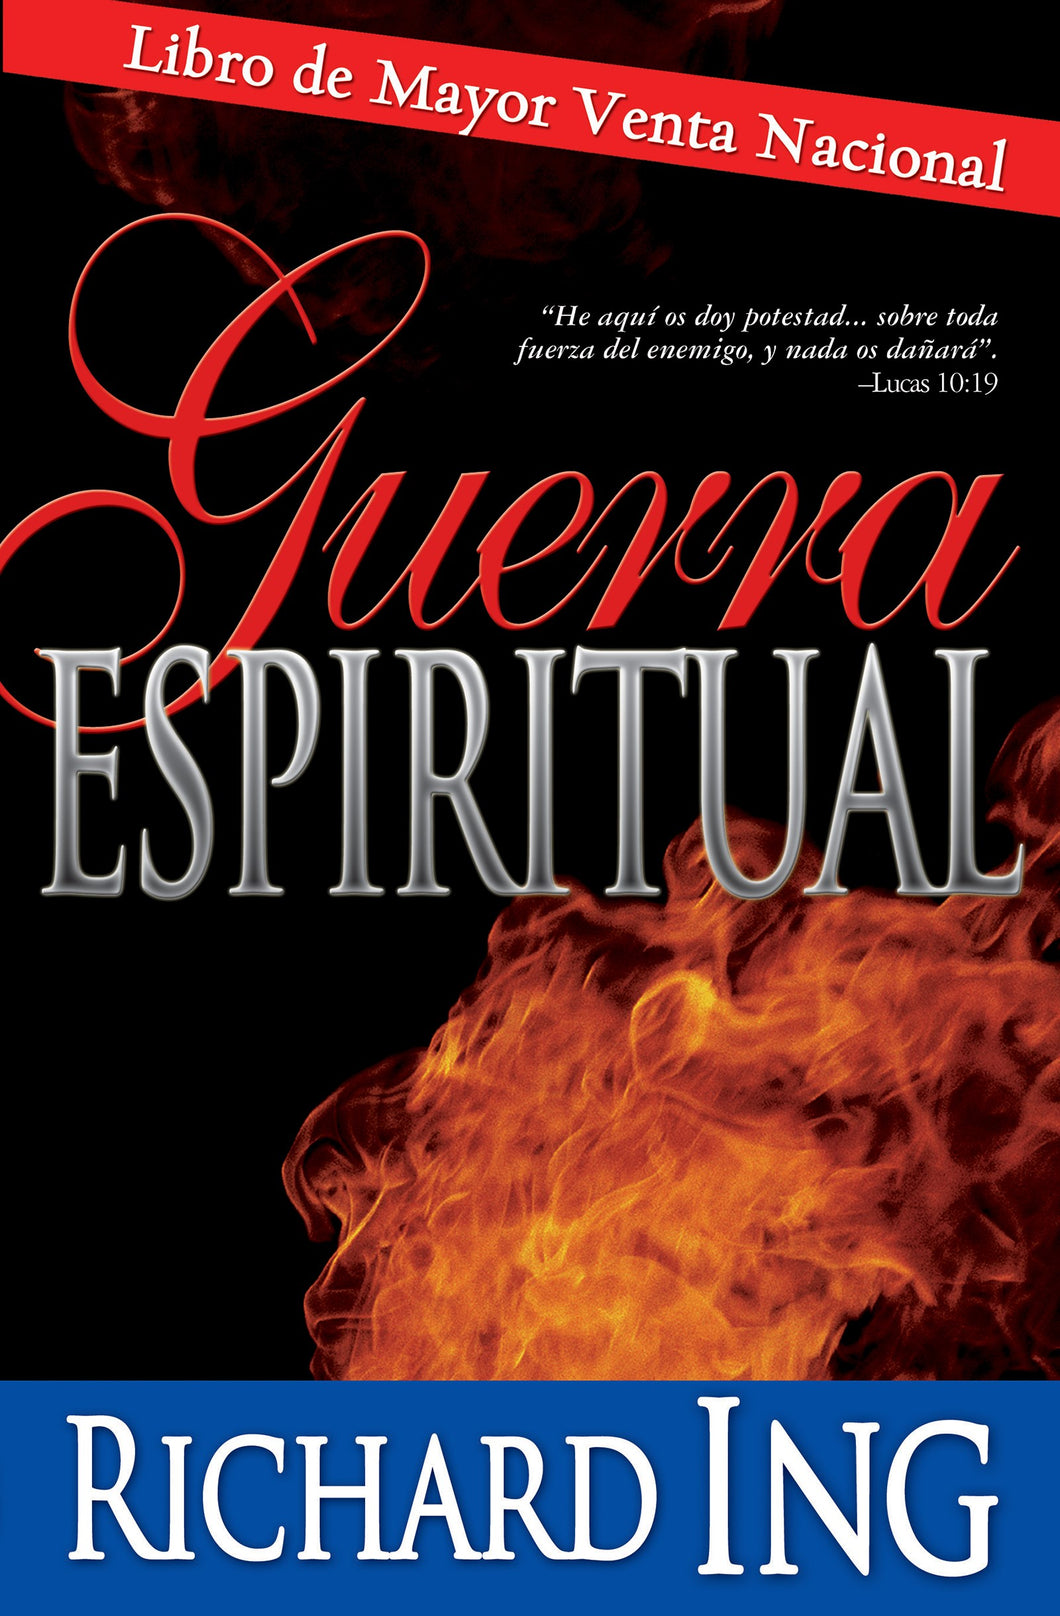 Spanish-Spiritual Warfare